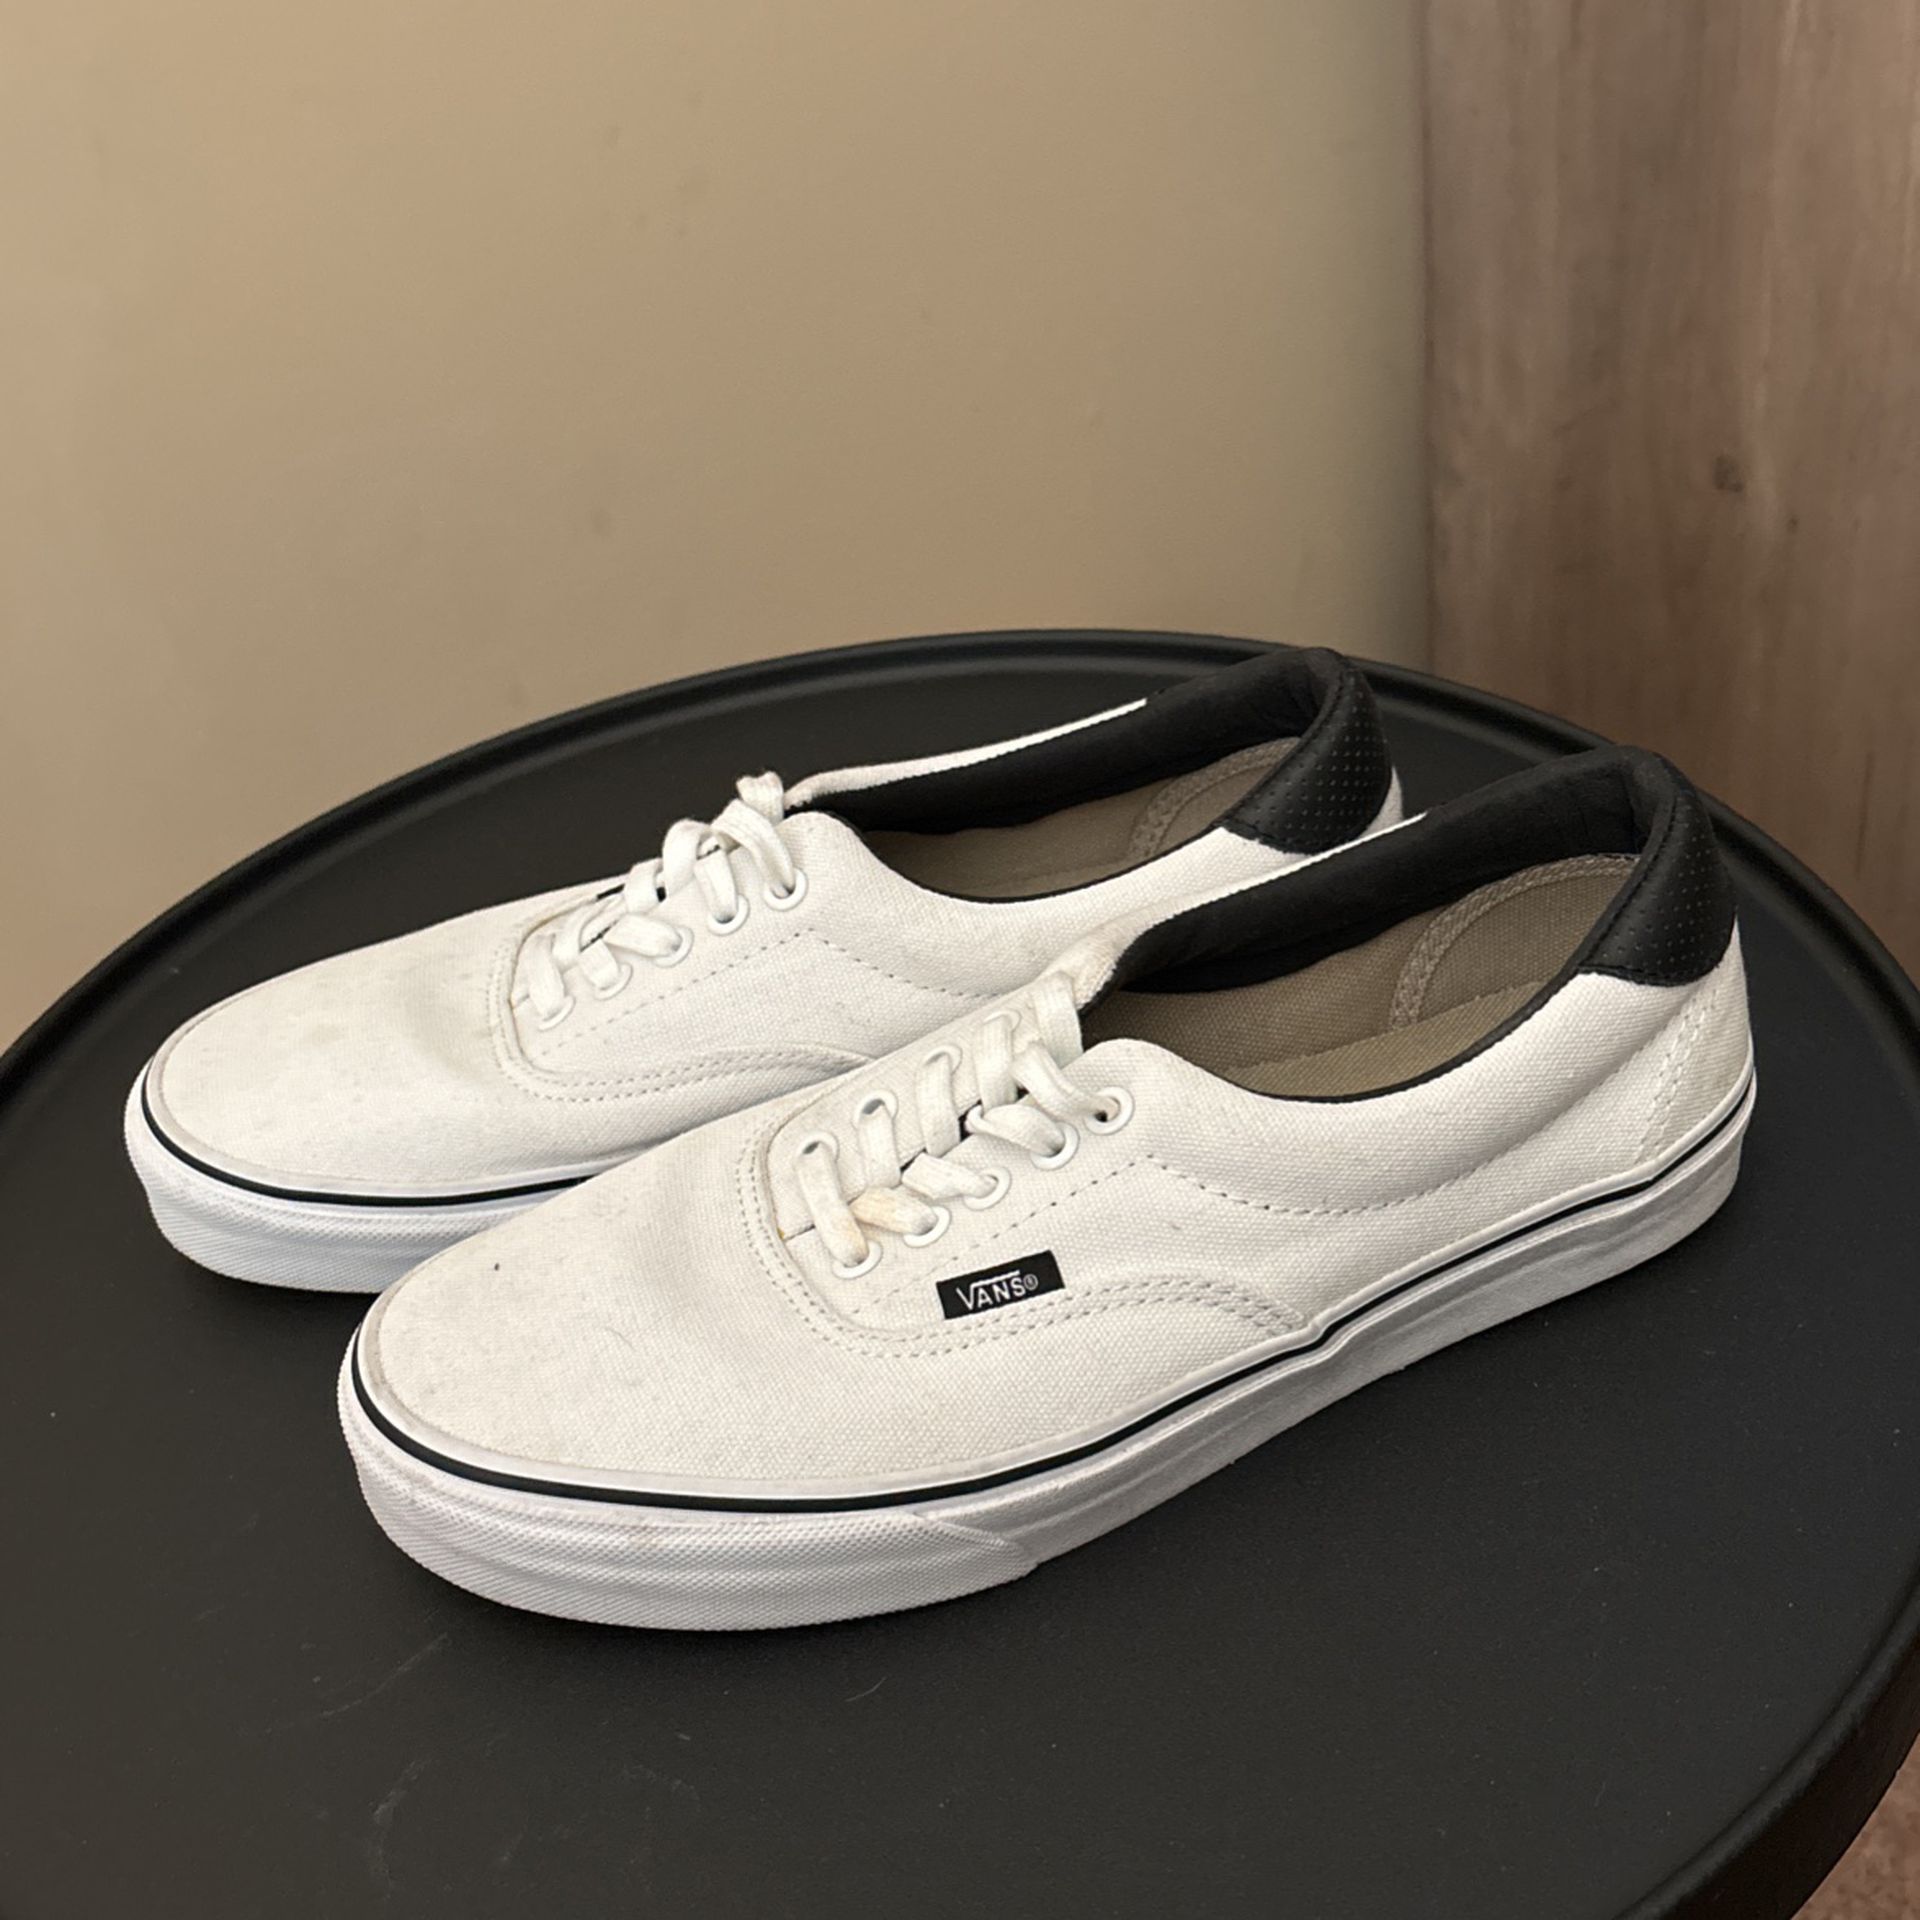 Vans Sneakers Men’s Size 9